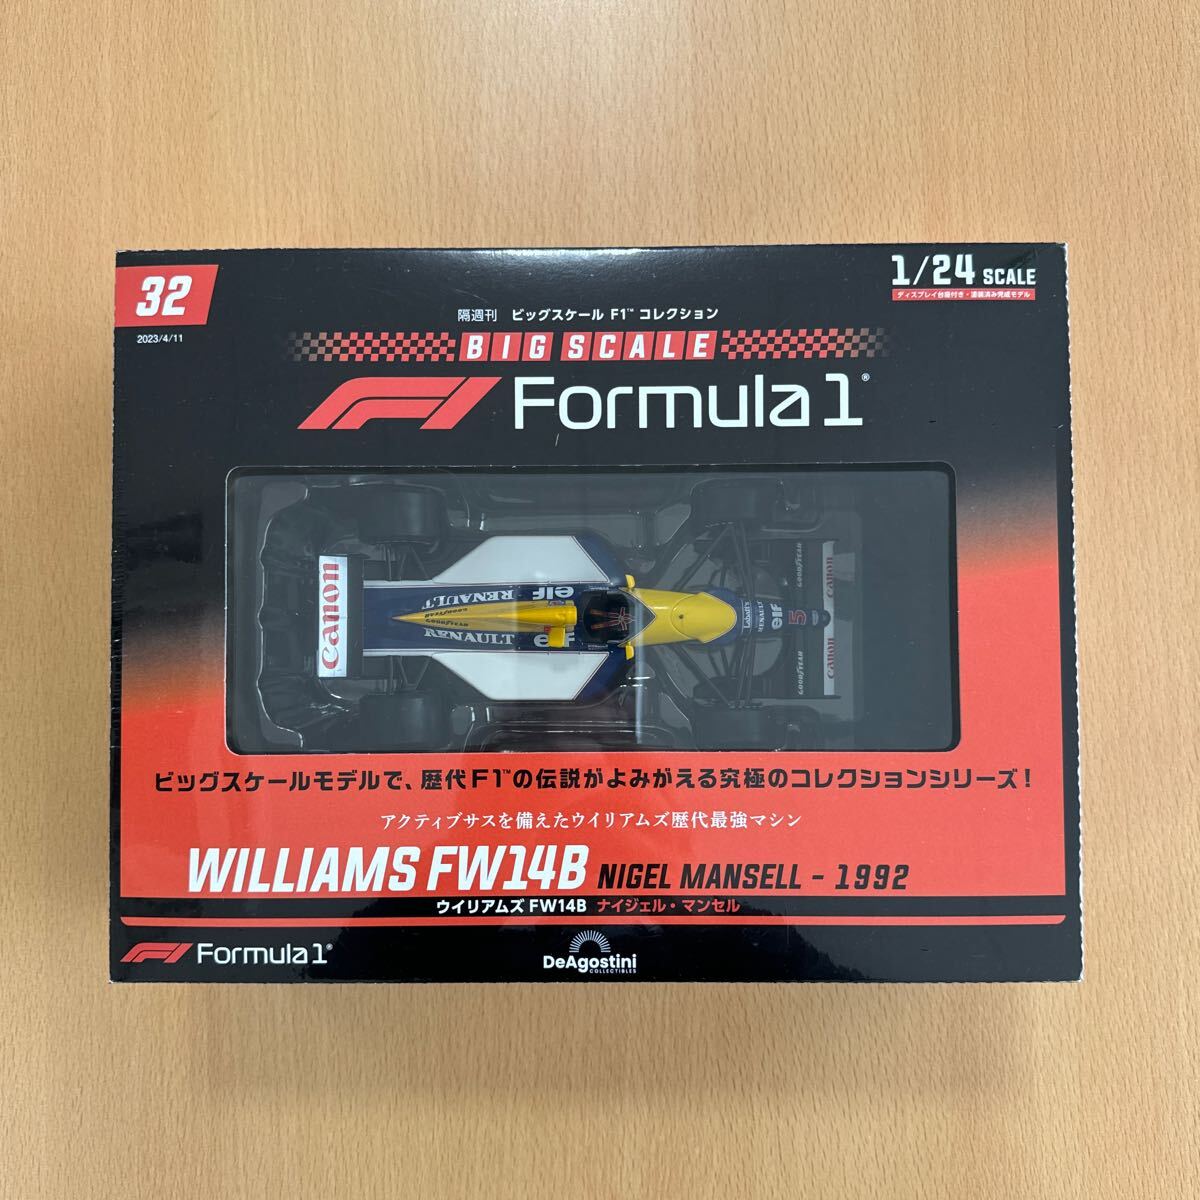 tia Goss чай ni Williams FW14Bnai гель * Mansell большой шкала F1 коллекция национальное издание 2023 год 4 месяц 11 день номер 